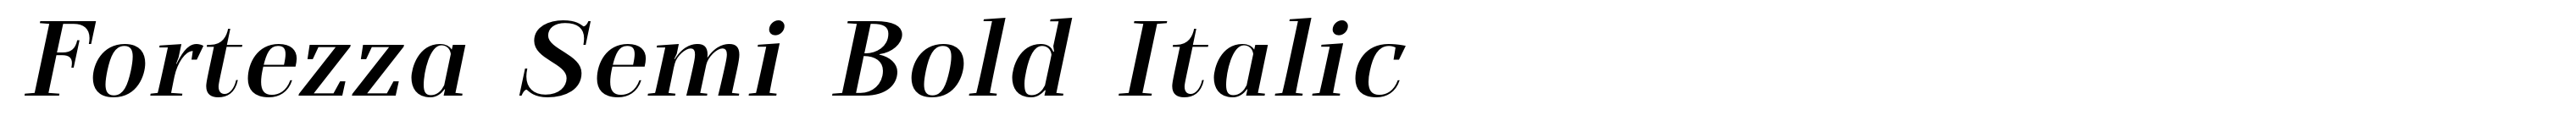 Fortezza Semi Bold Italic